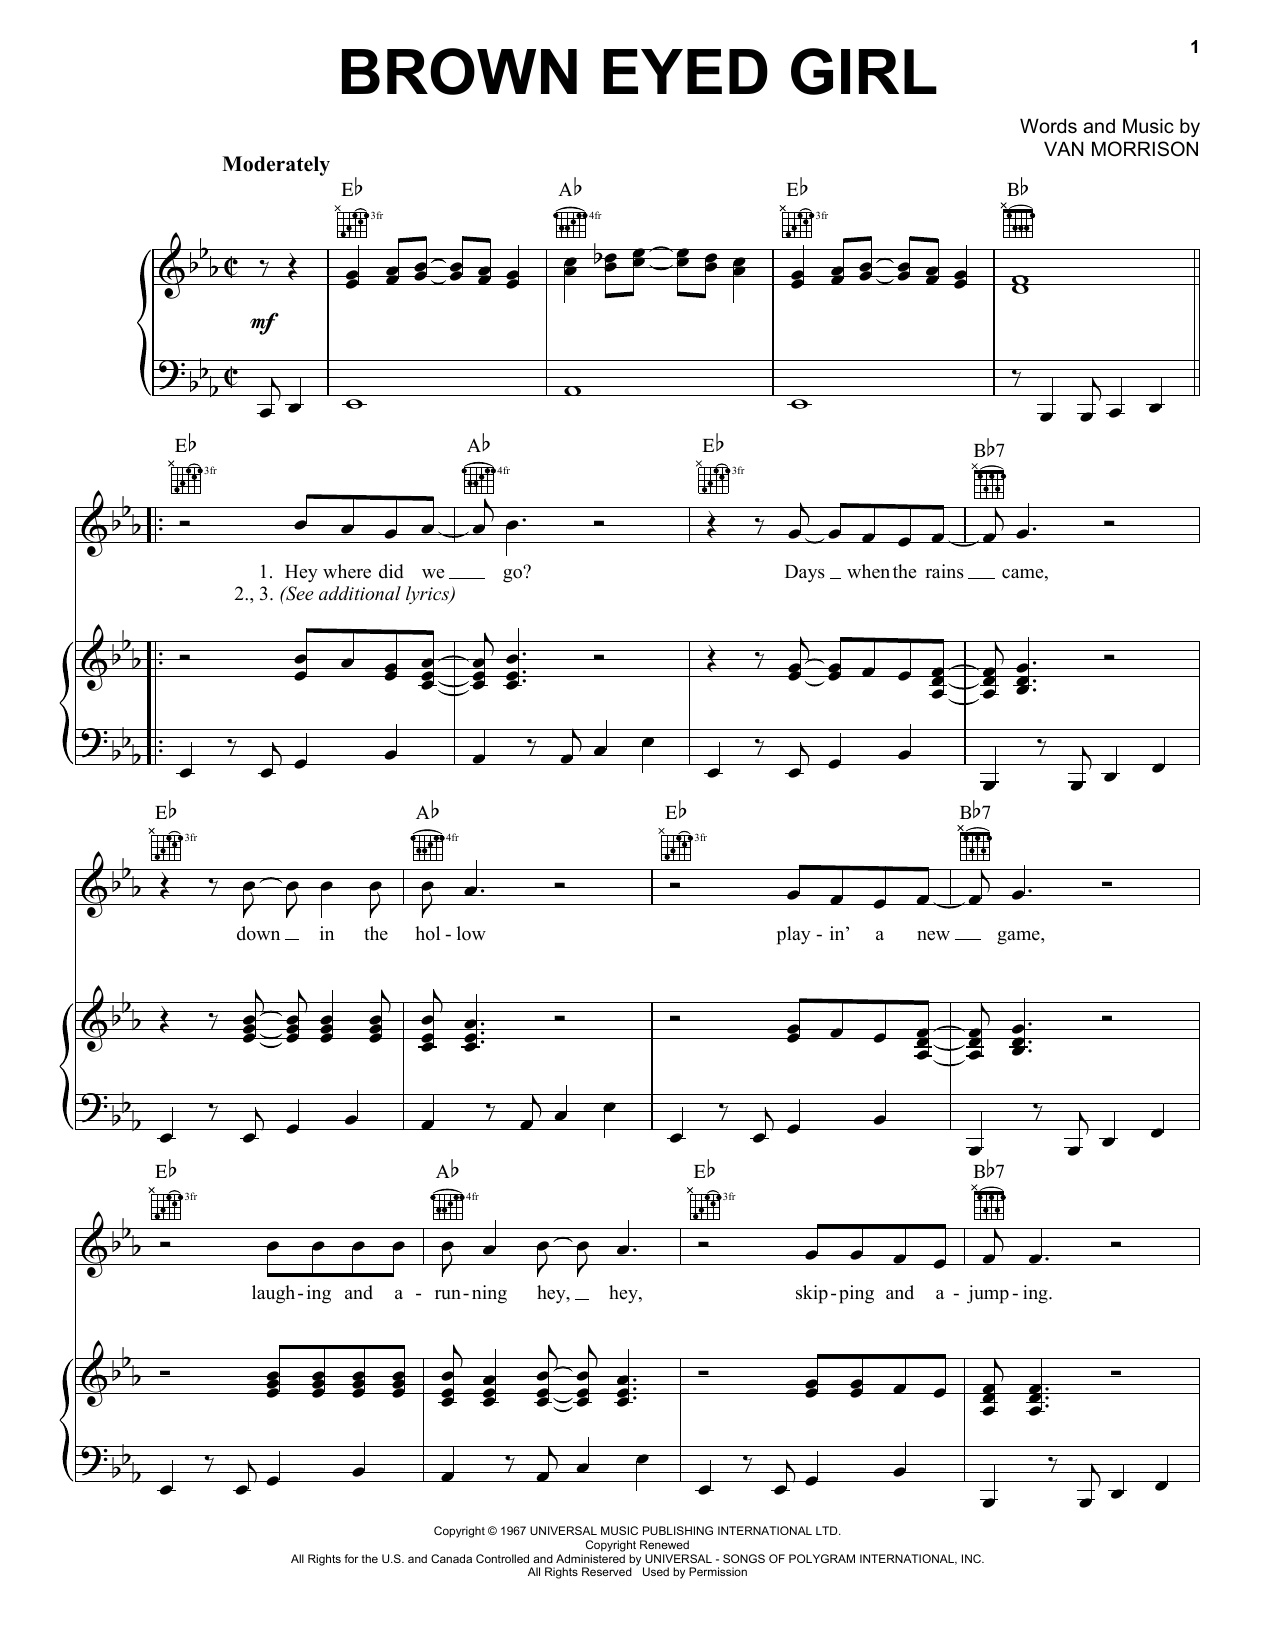 Van Morrison Brown Eyed Girl Sheet Music Notes & Chords for Lyrics & Chords - Download or Print PDF